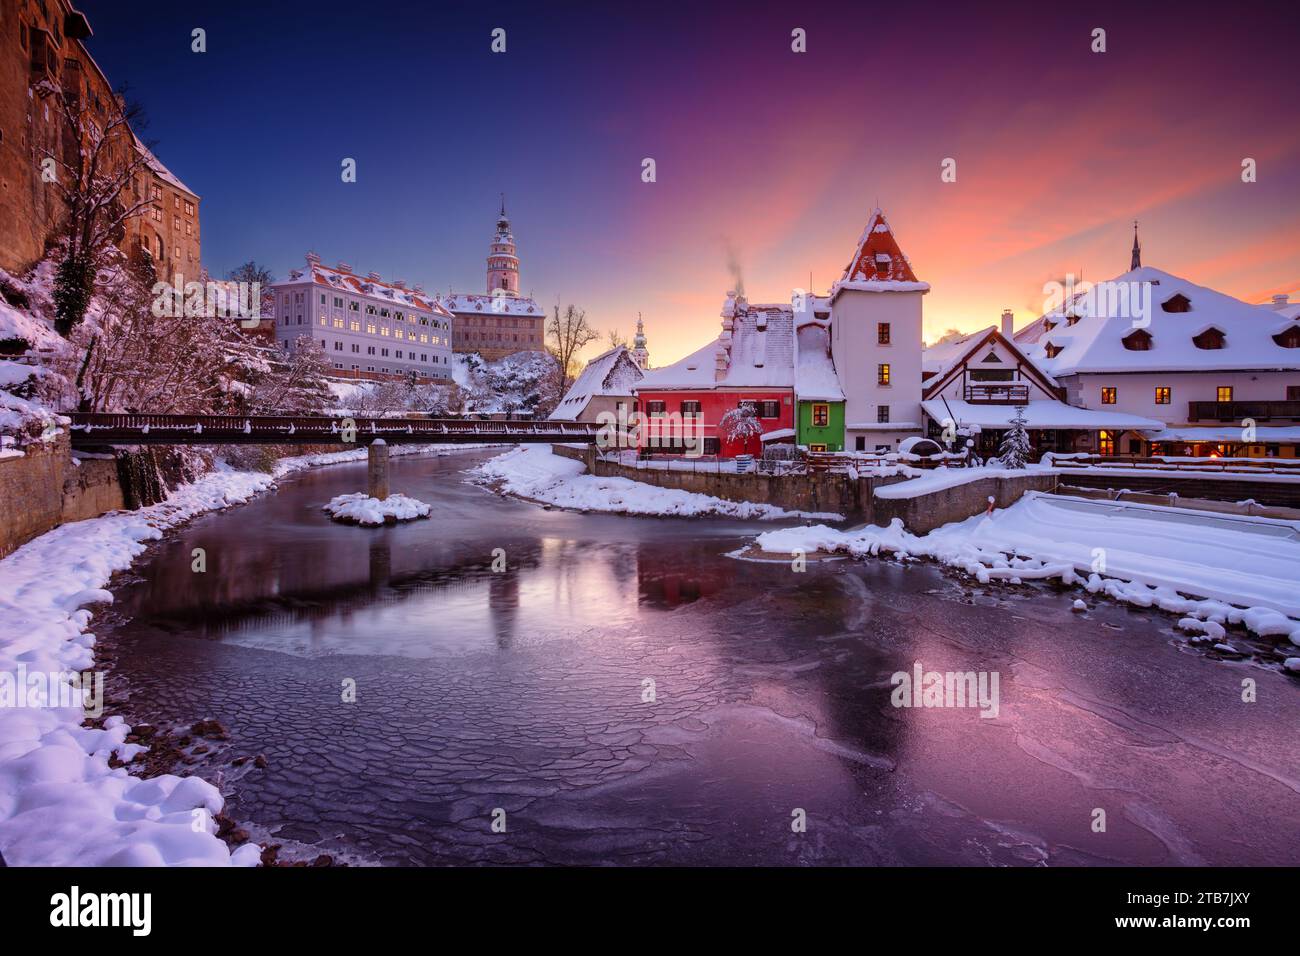 Cesky Krumlov, Tschechische Republik. Stadtbild von Cesky Krumlov, Tschechien bei schönem kalten Wintersonnenaufgang. Stockfoto